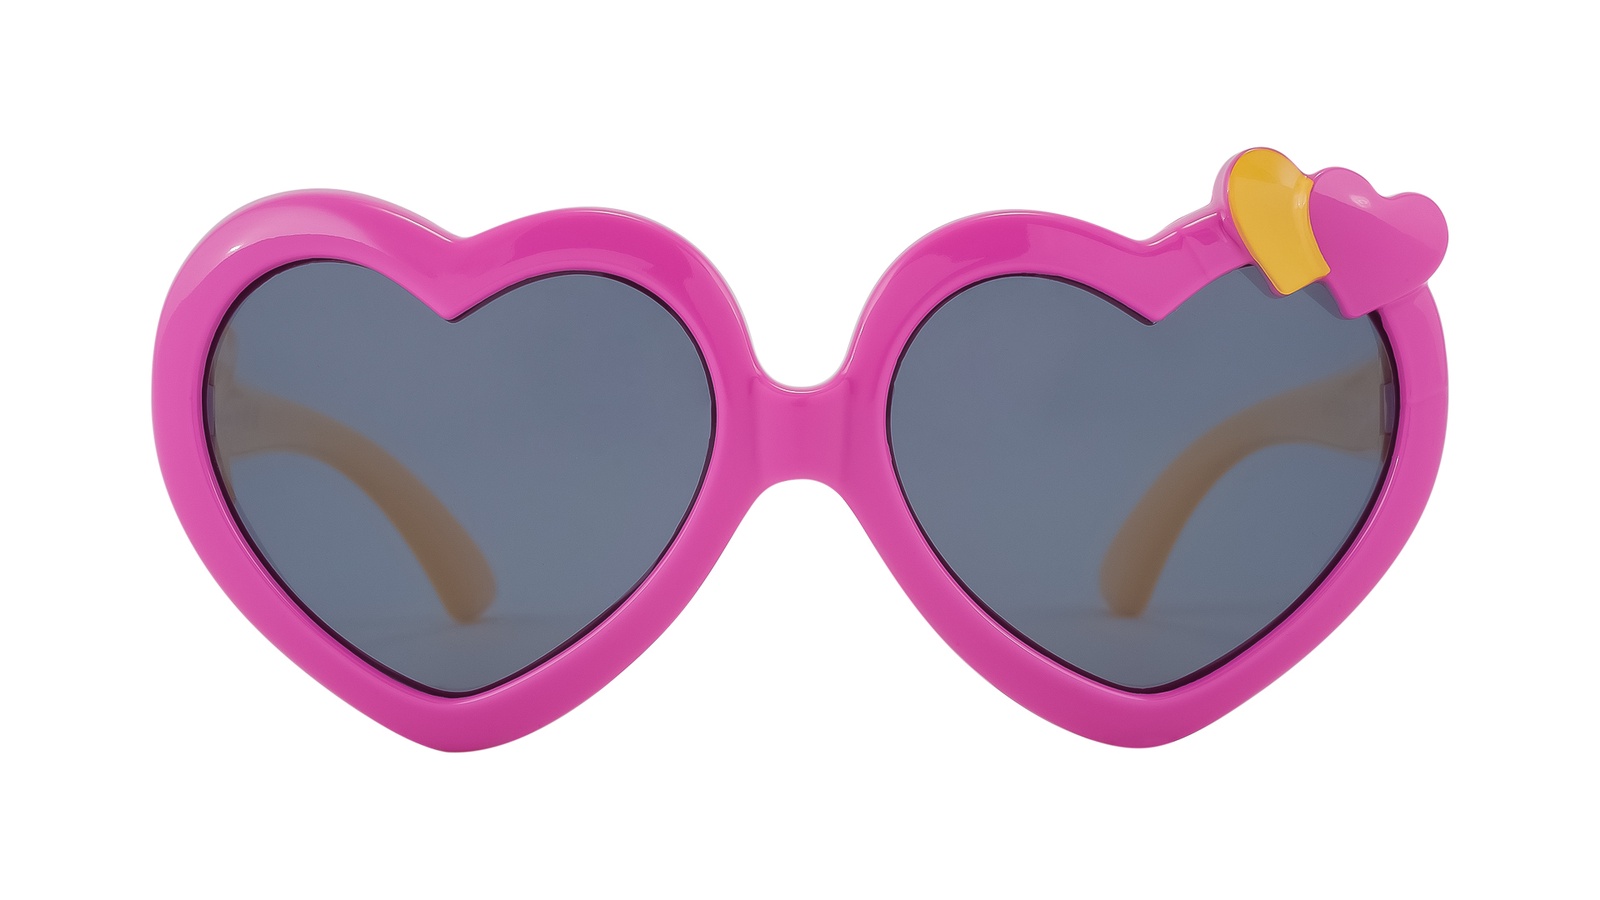 Очко сердечко. Очки сердечки. Солнечные очки сердечки. Детские очки сердечки. Детские очки солнцезащитные сердечки.